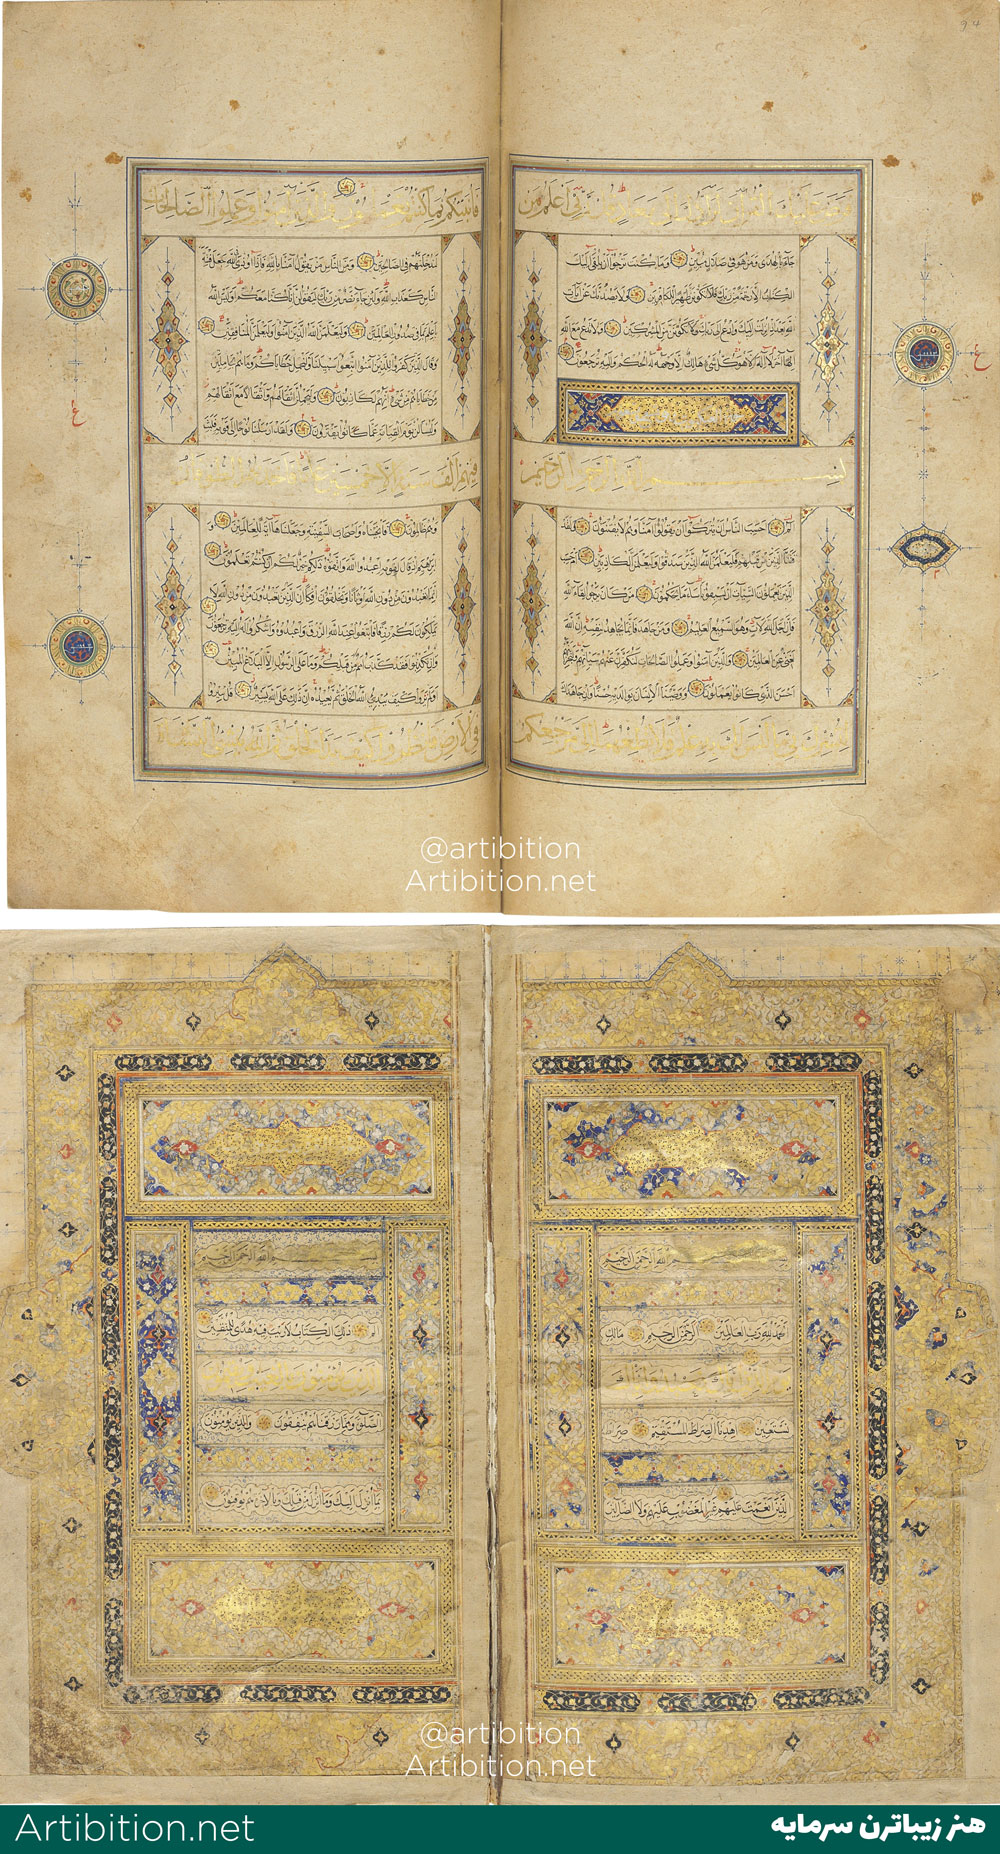 نسخه خطی قرآن بزرگ، متعلق به قرن 16، ایران- هرات